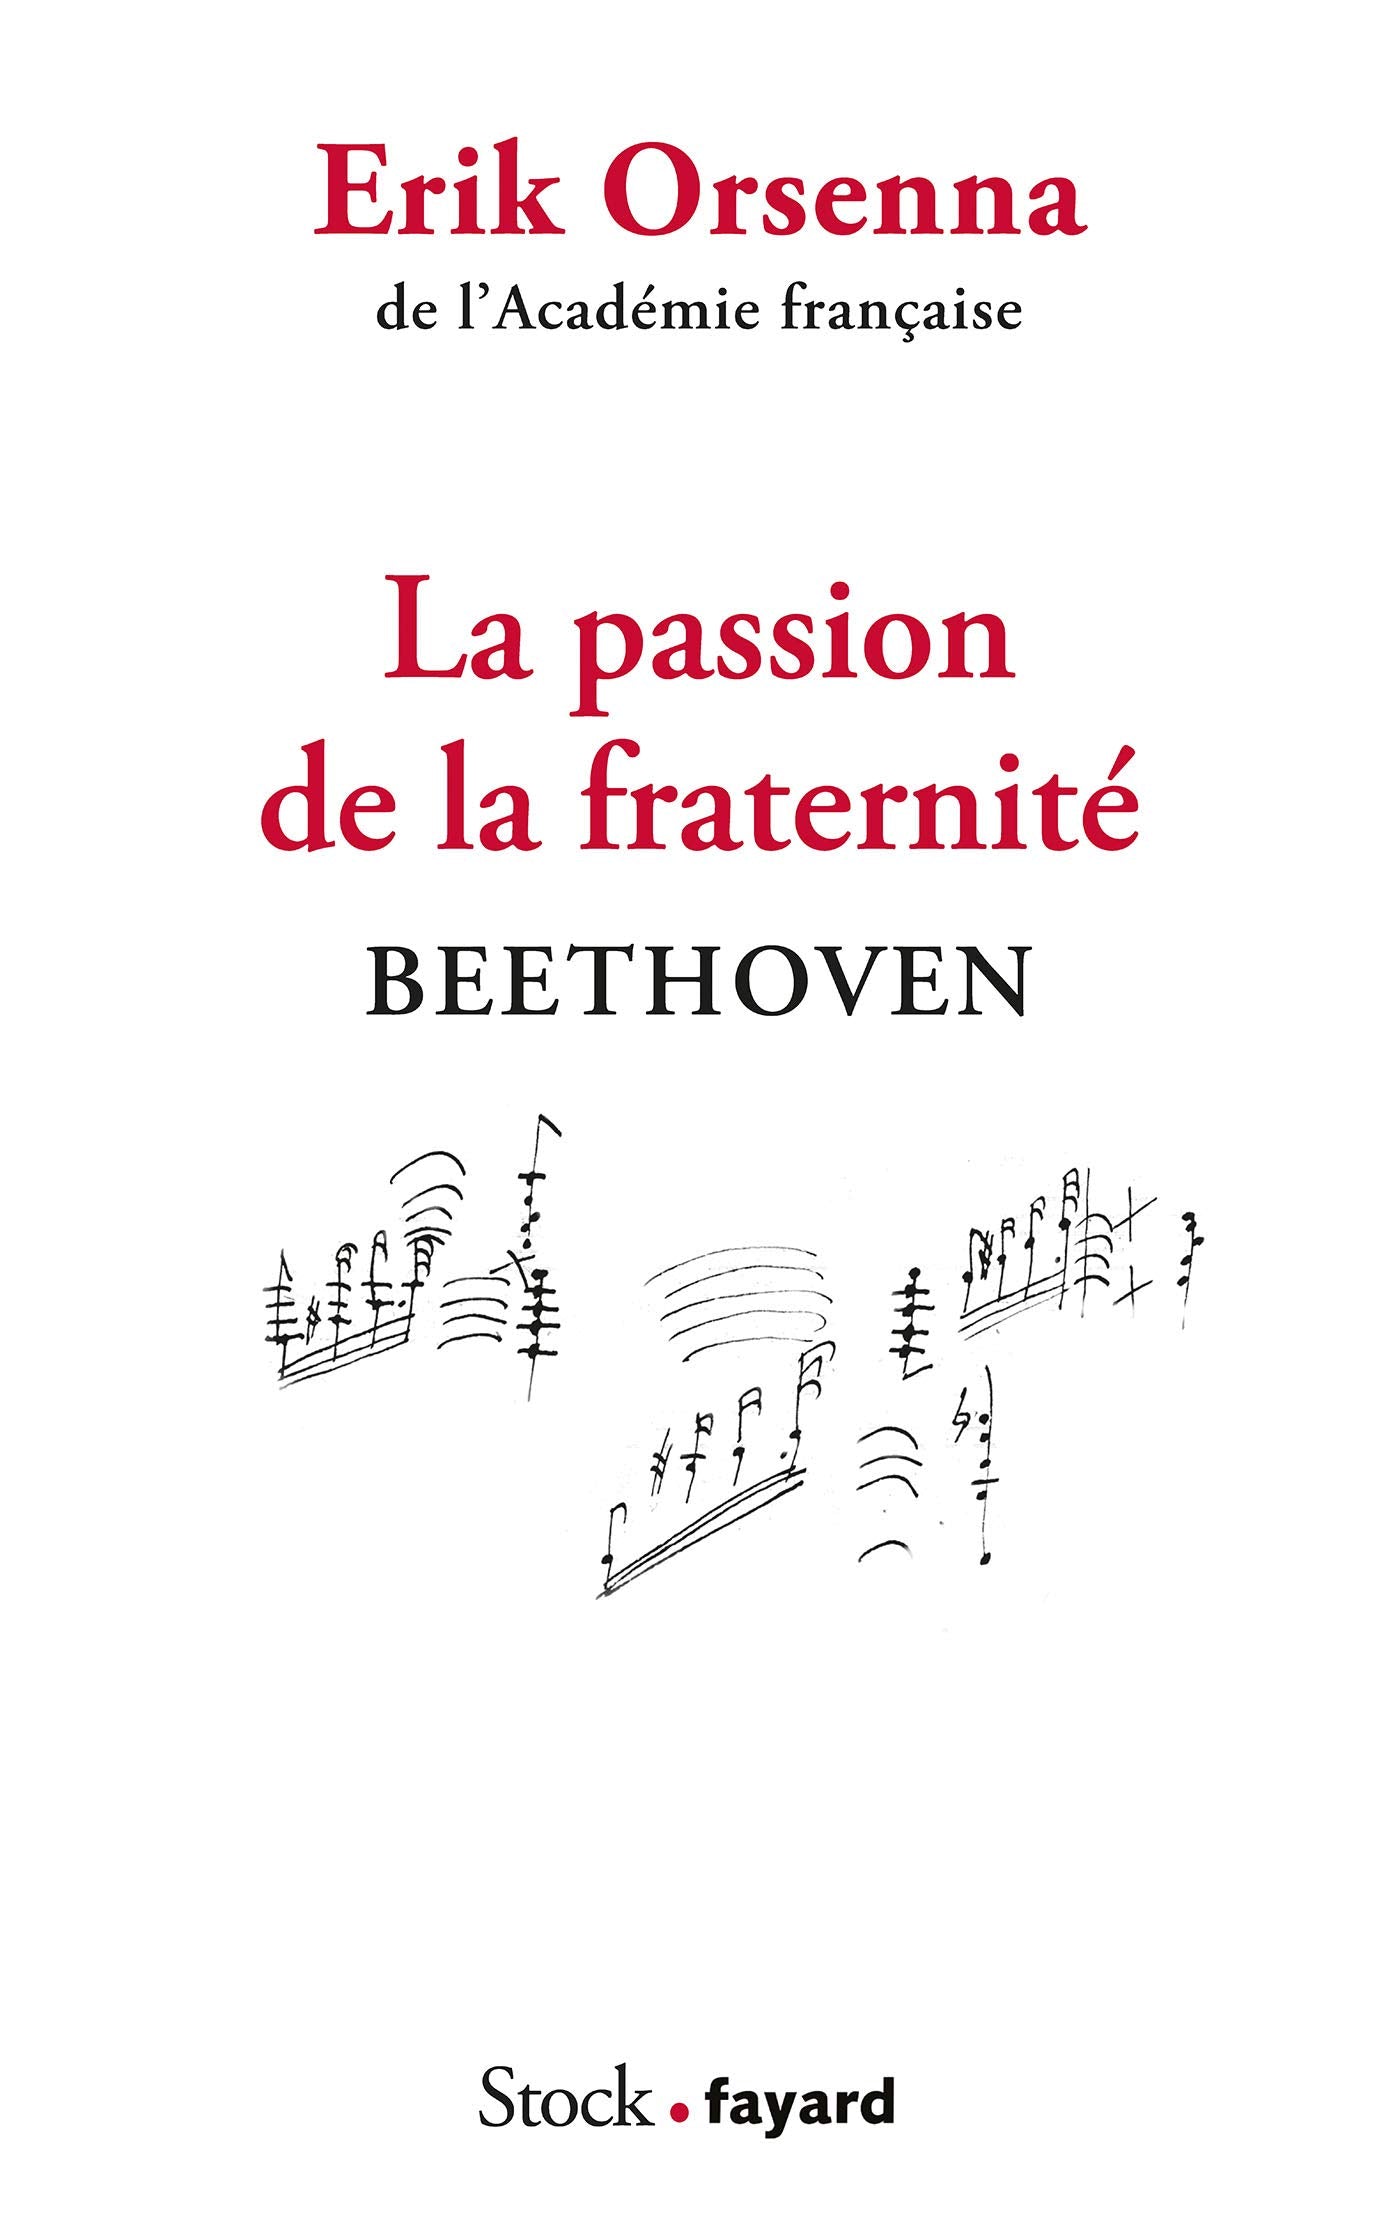 La passion de la fraternité: Beethoven